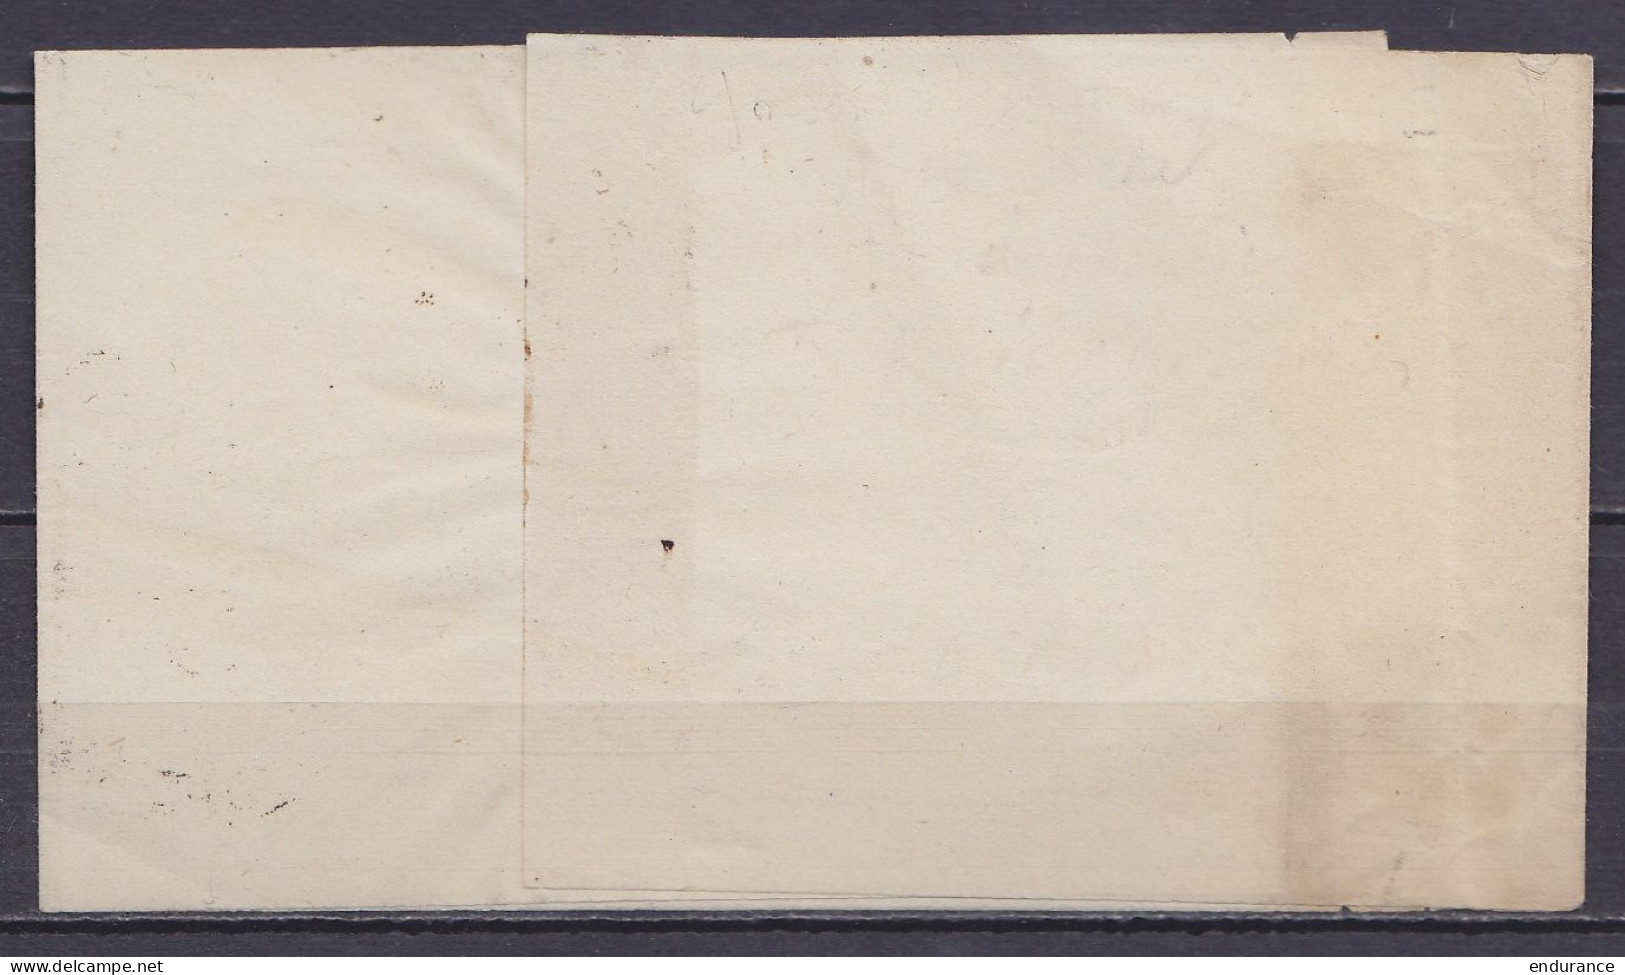 Très Rare Cachet à Hernie "PP /17 FEVR. 1869/ ST-JOSSE-TEN-NOODE (BRUXELLES) Sur Bande D'imprimé Pour ANVERS - 1 Ou 2 Pi - 1869-1883 Léopold II